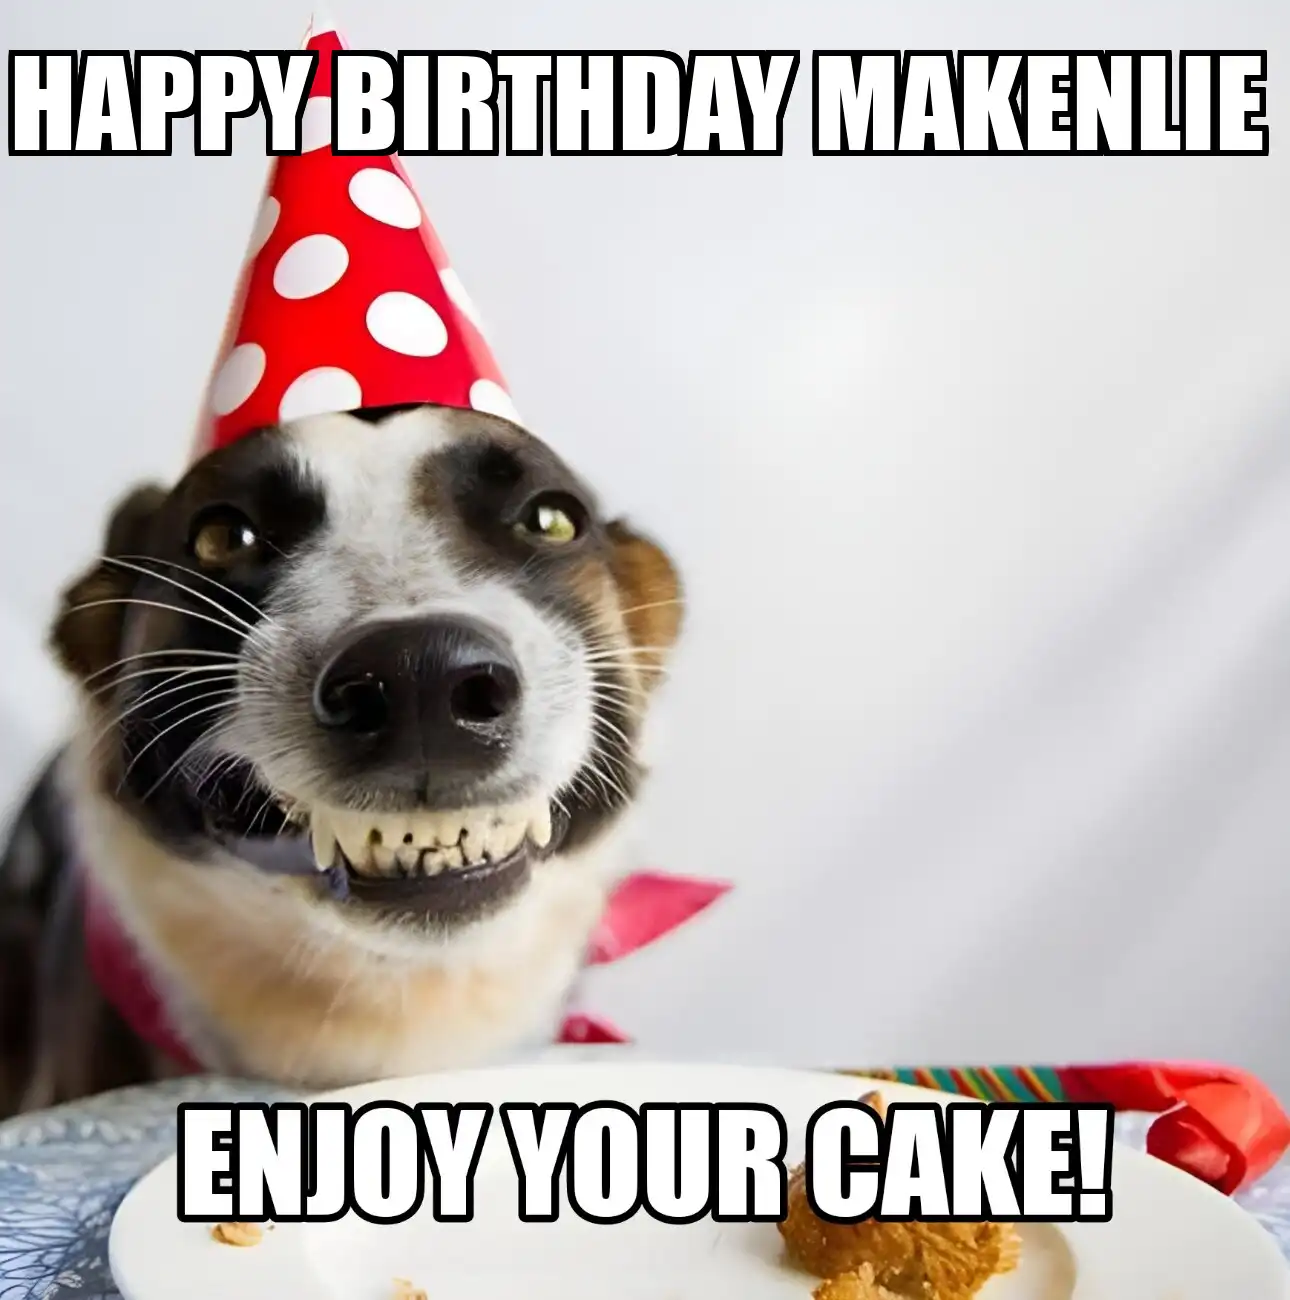 Happy Birthday Makenlie Enjoy Your Cake Dog Meme